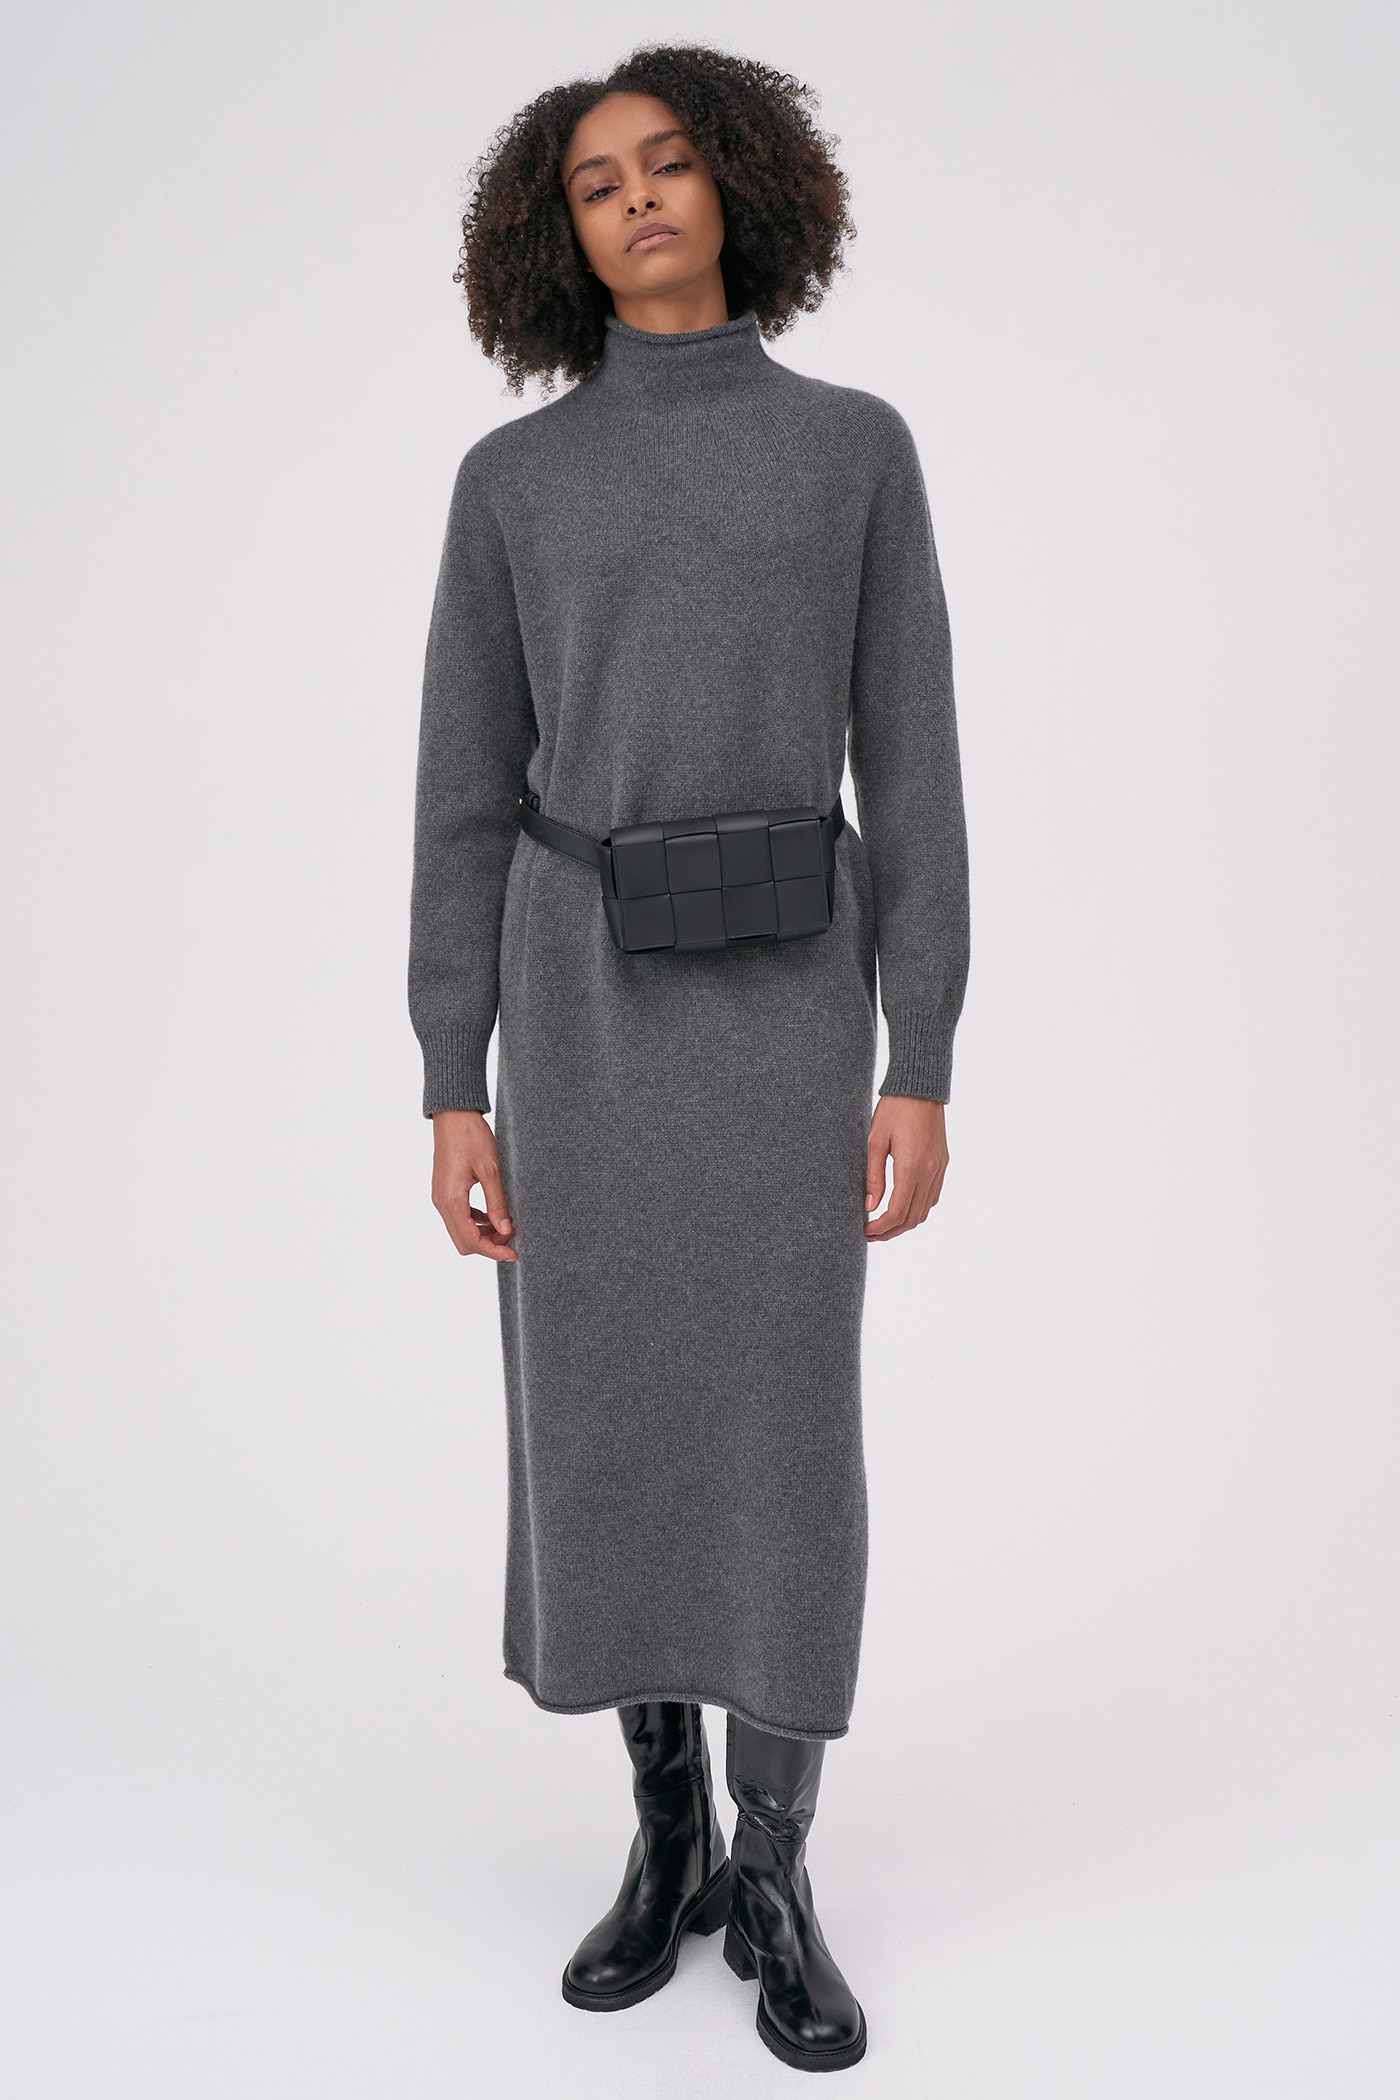 Merino Wool 100 Wholegarment Knit Dress[LMBBWIKN159]-Dark Gray